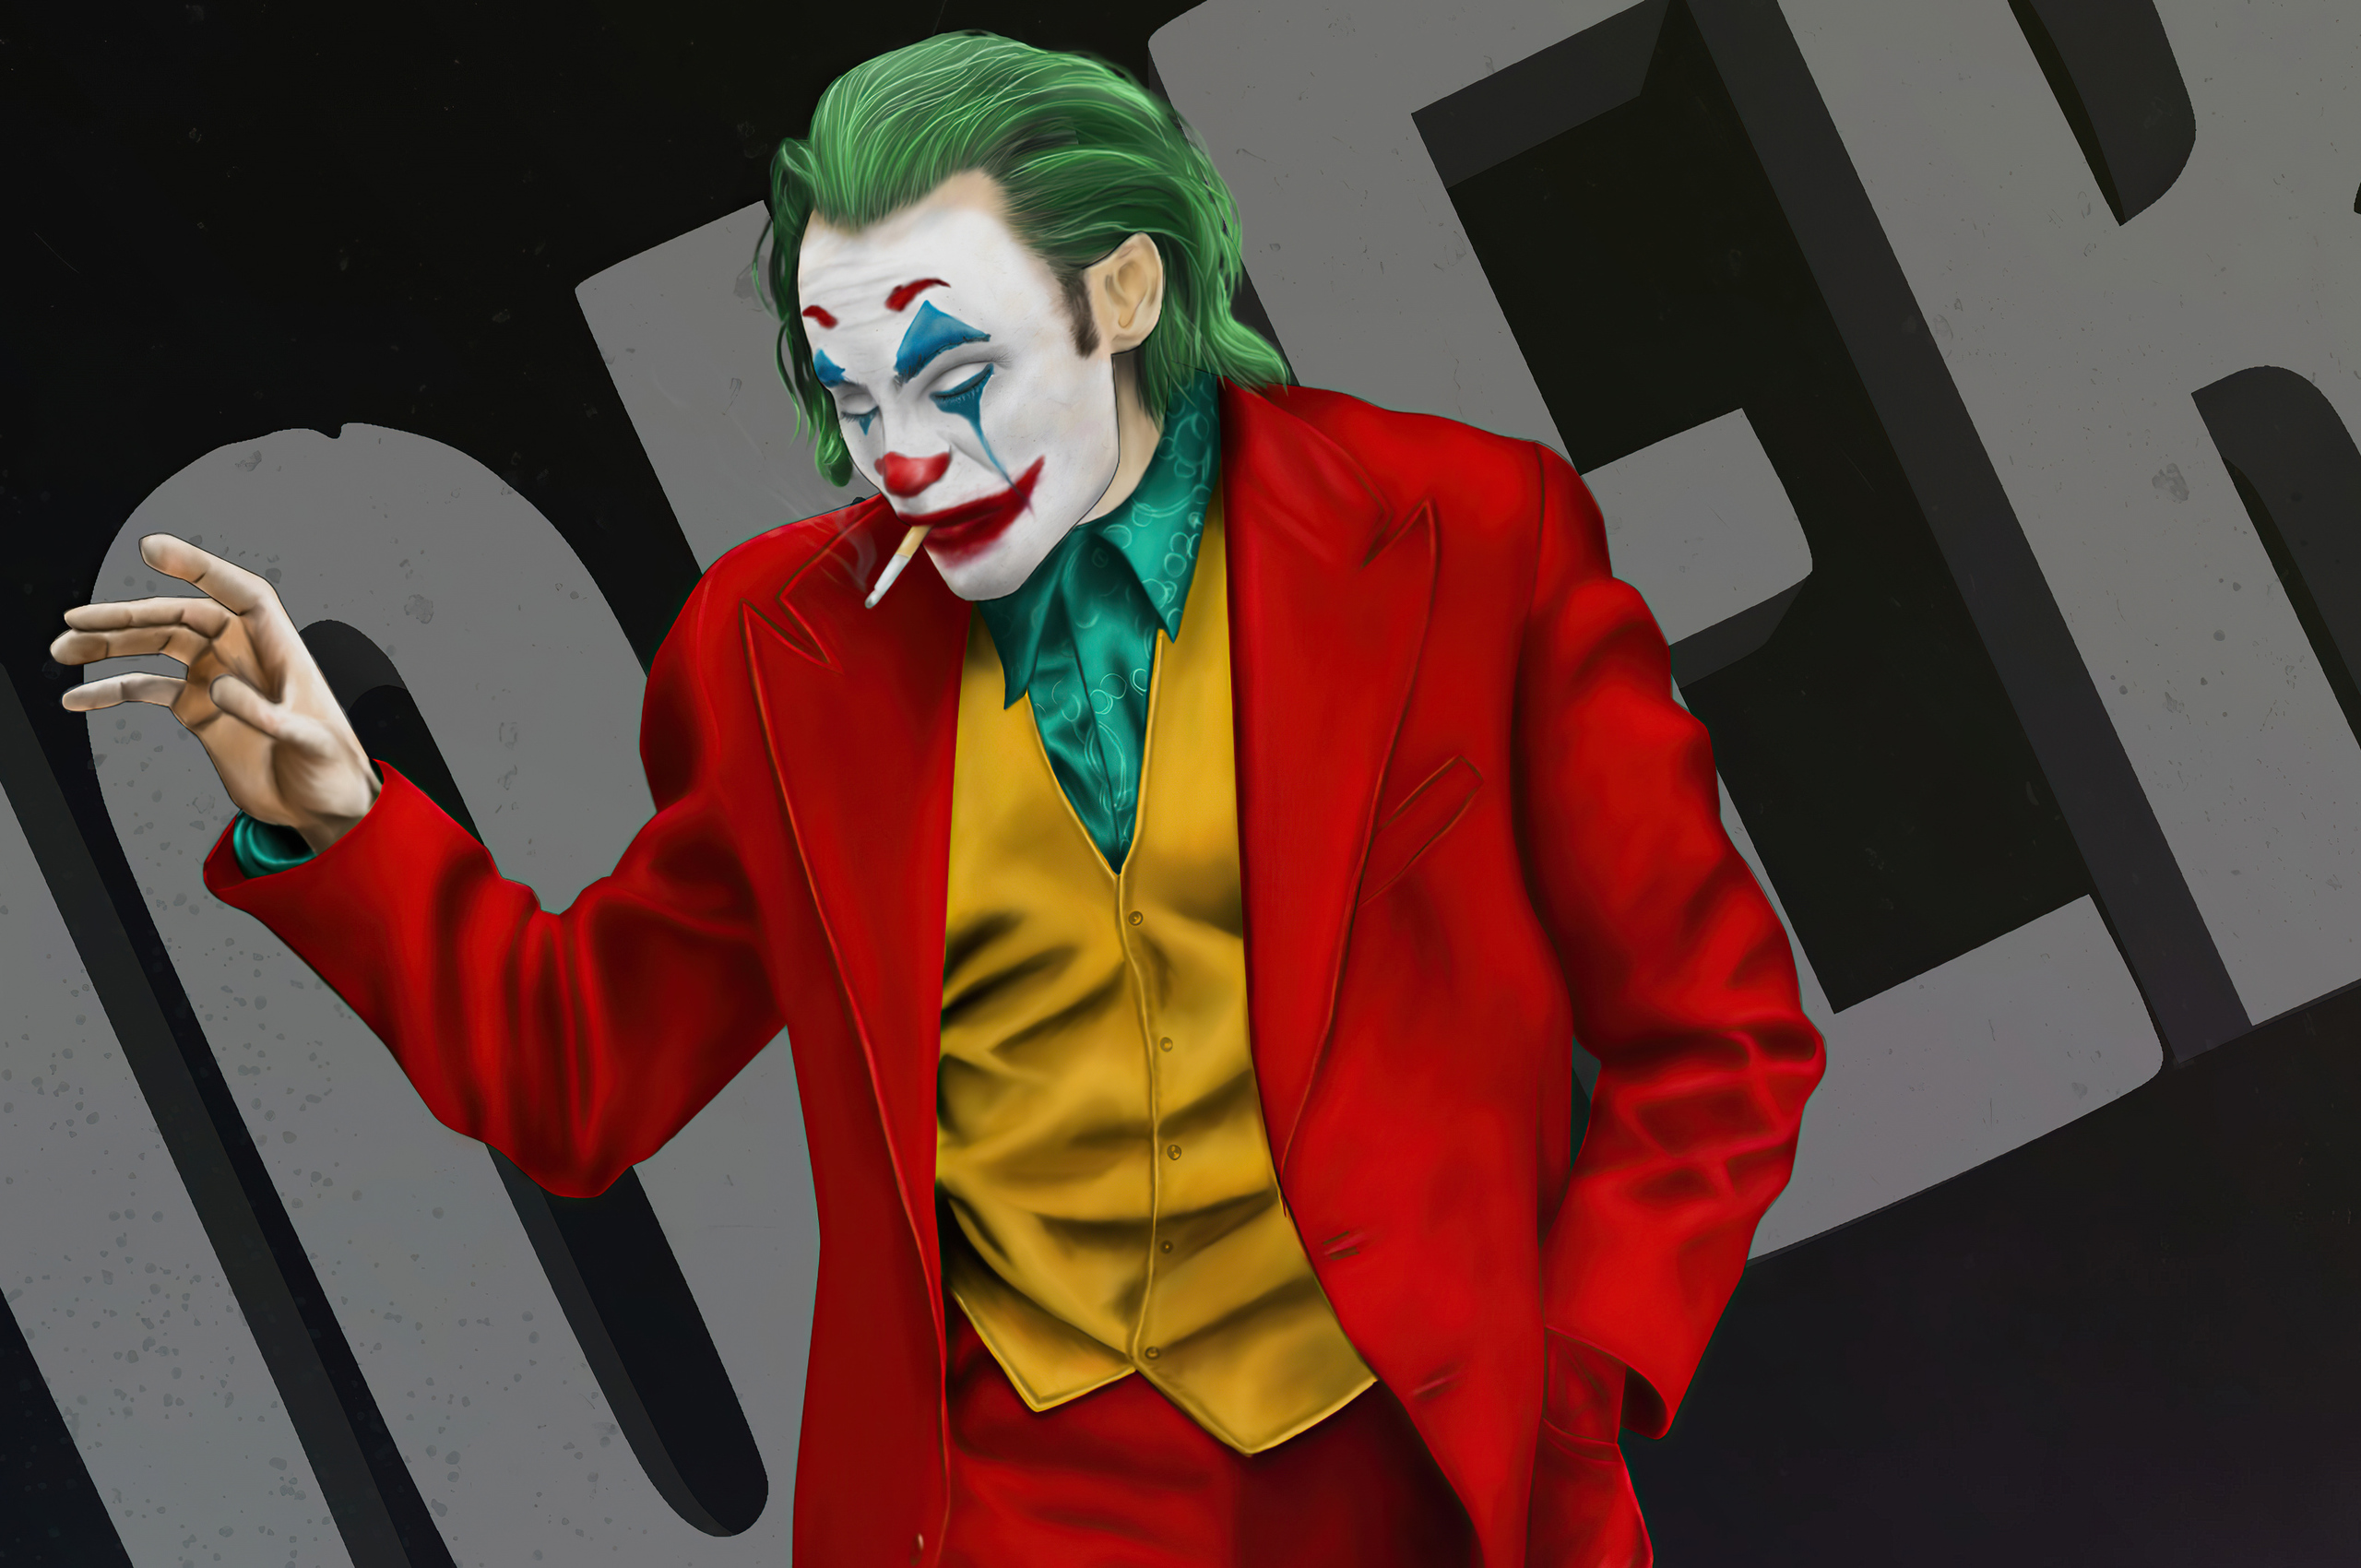 Joker Bad Guy 4k 2020 In 2560x1700 Resolution. joker-bad-guy-4k-2020-d4.jpg...